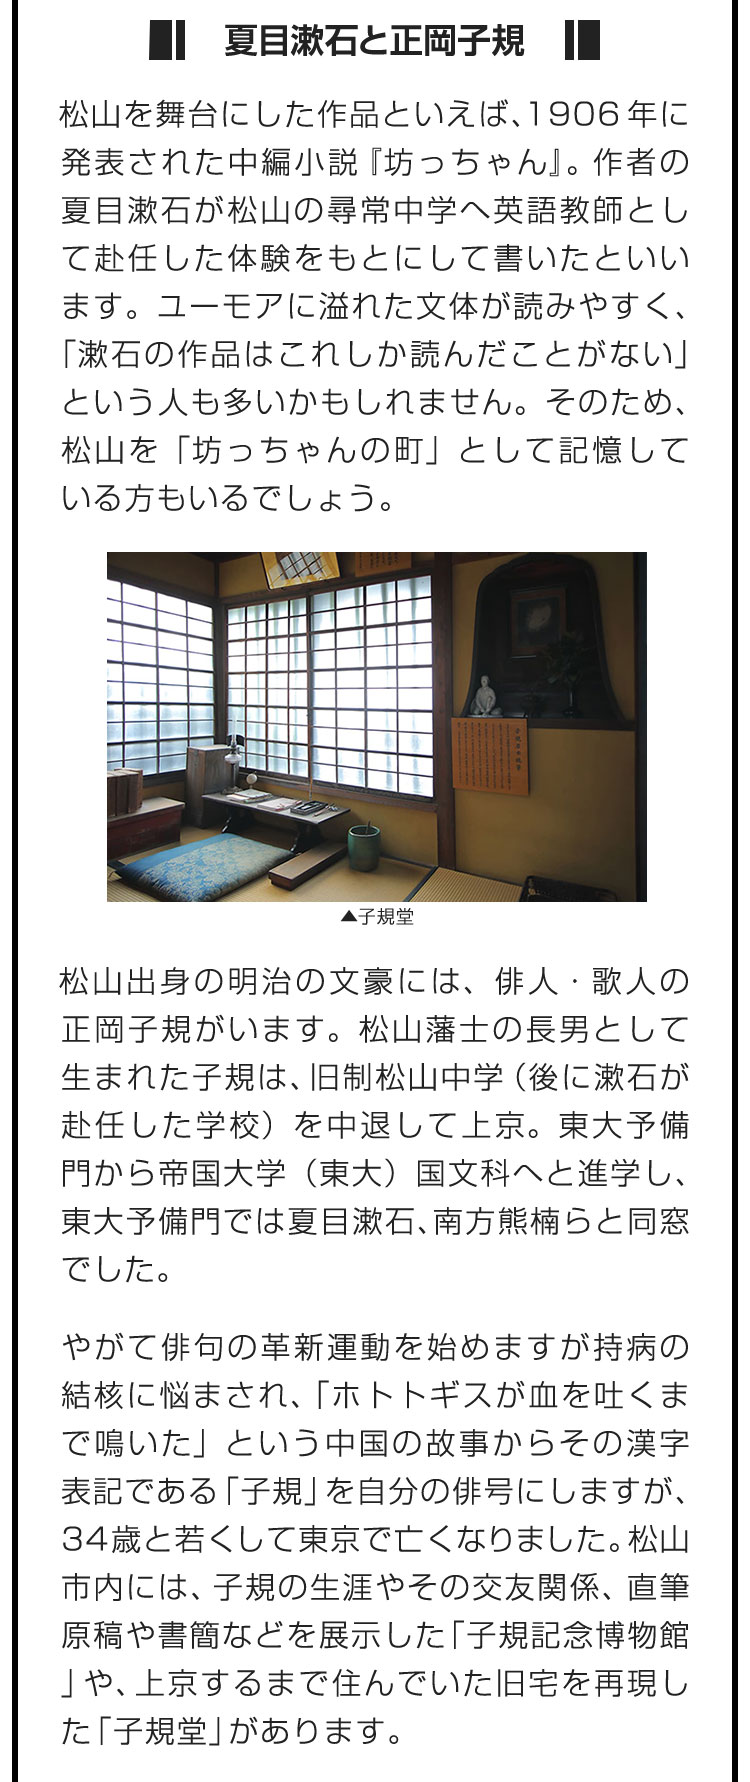 ■夏目漱石と正岡子規■松山を舞台にした作品といえば、1906年に発表された中編小説『坊っちゃん』。作者の夏目漱石が松山の尋常中学へ英語教師として赴任した体験をもとにして書いたといいます。ユーモアに溢れた文体が読みやすく、「漱石の作品はこれしか読んだことがない」という人も多いかもしれません。そのため、松山を「坊っちゃんの町」として記憶している方もいるでしょう。　松山出身の明治の文豪には、俳人・歌人の正岡子規がいます。松山藩士の長男として生まれた子規は、旧制松山中学（後に漱石が赴任した学校）を中退して上京。東大予備門から帝国大学（東大）国文科へと進学し、東大予備門では夏目漱石、南方熊楠らと同窓でした。　やがて俳句の革新運動を始めますが持病の結核に悩まされ、「ホトトギスが血を吐くまで鳴いた」という中国の故事からその漢字表記である「子規」を自分の俳号にしますが、34歳と若くして東京で亡くなりました。松山市内には、子規の生涯やその交友関係、直筆原稿や書簡などを展示した「子規記念博物館」や、上京するまで住んでいた旧宅を再現した「子規堂」があります。